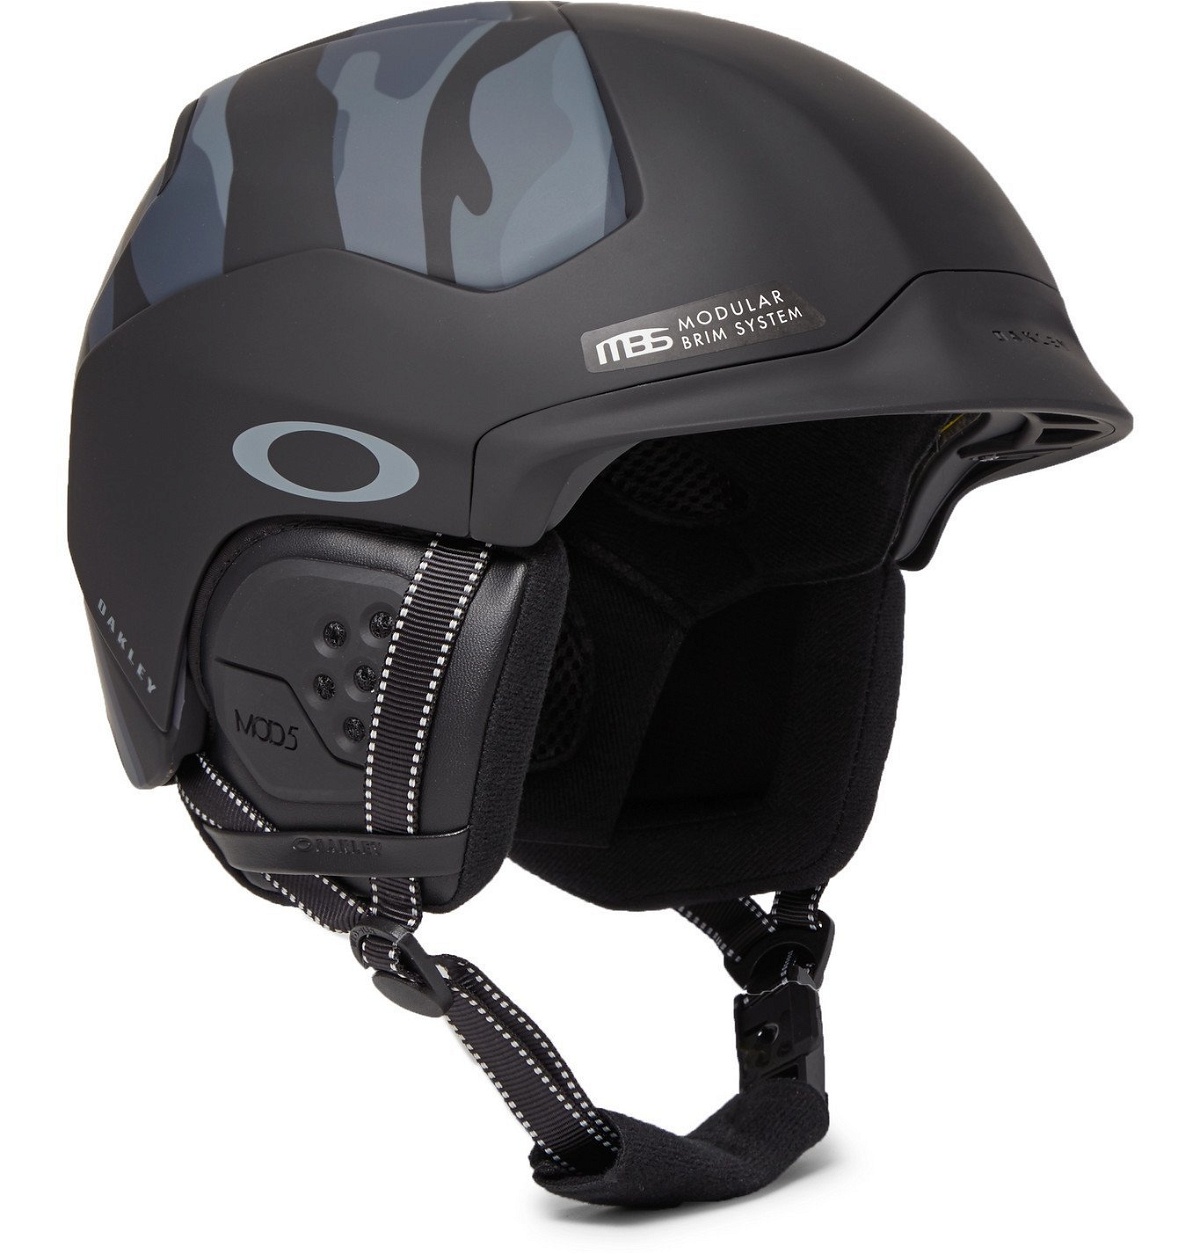 Oakley - MOD5 Camouflage-Print Ski Helmet - Black Oakley